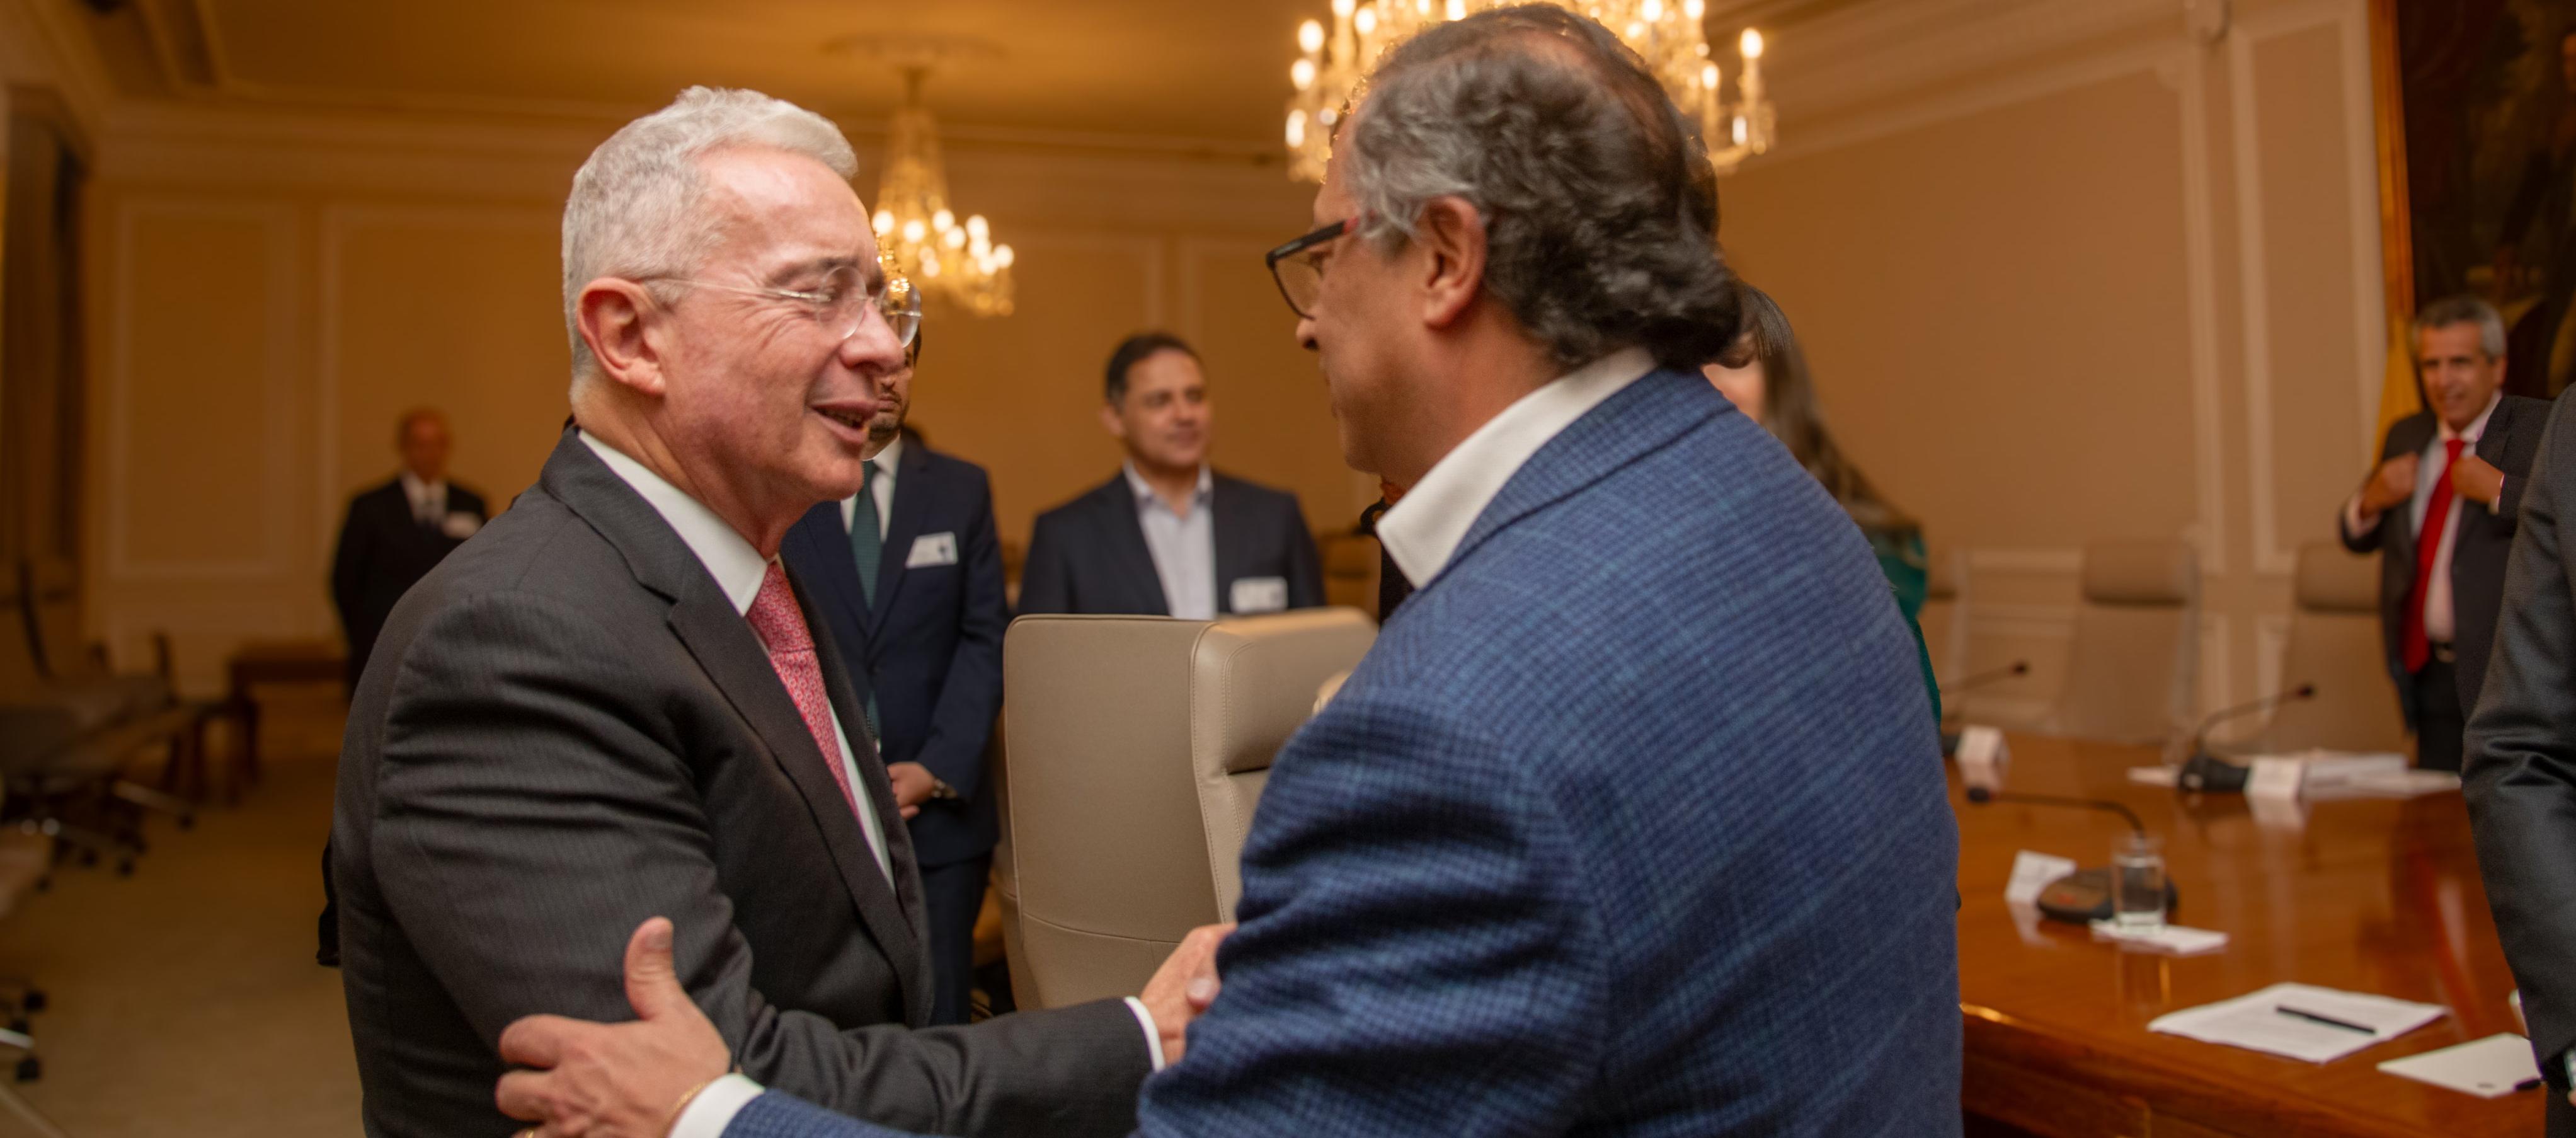 El presidente Gustavo Petro saluda al expresidente Alvaro Uribe al inicio de la reunión en Casa de Nariño